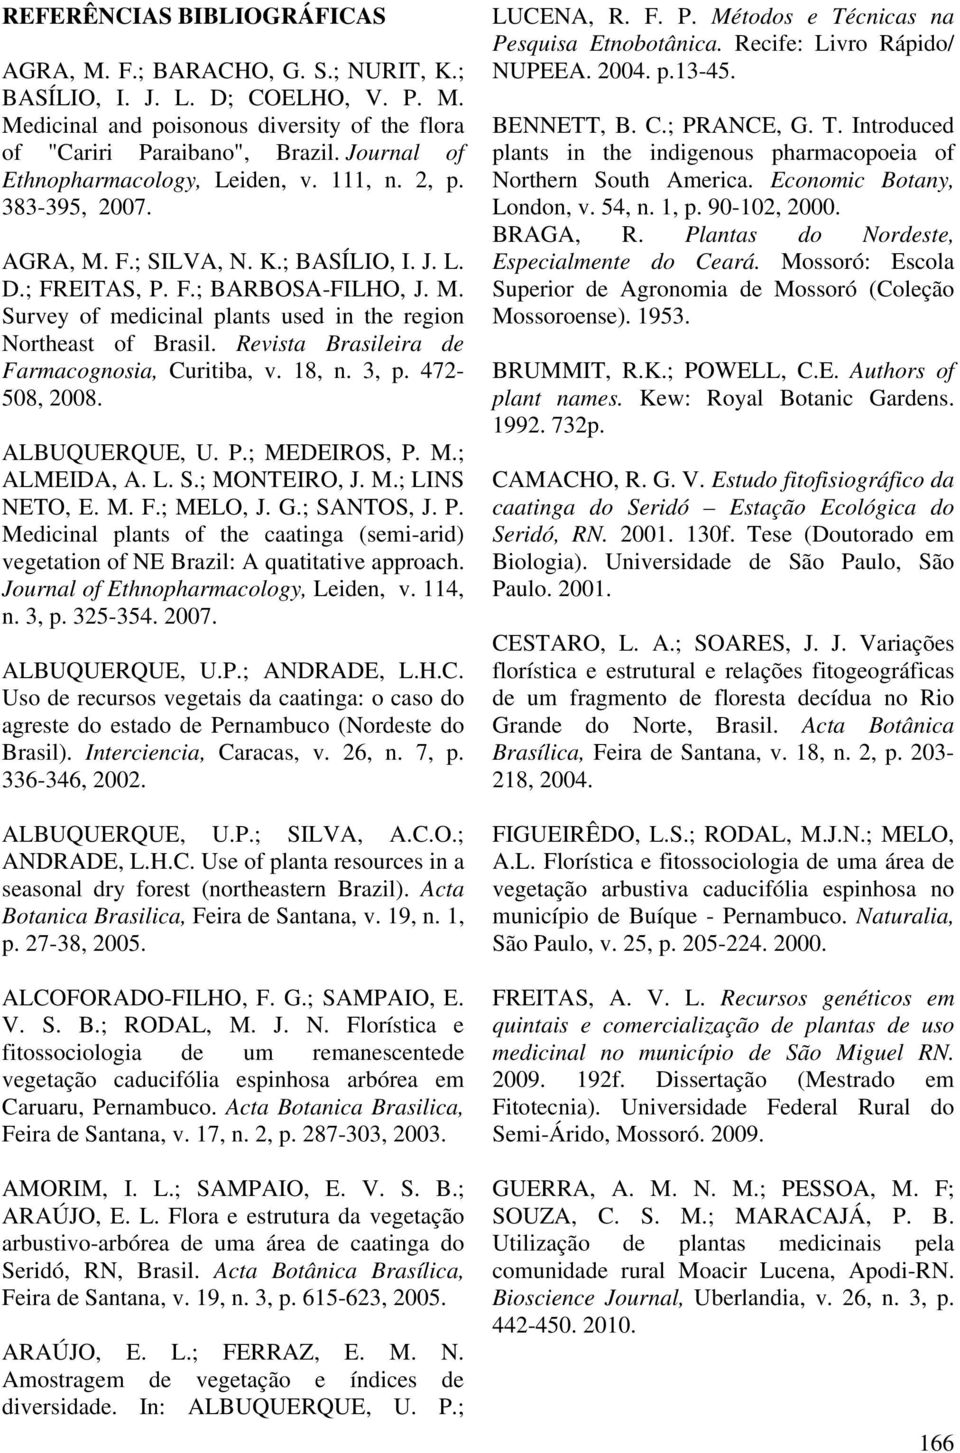 Revista Brasileira de Farmacognosia, Curitiba, v. 18, n. 3, p. 472-508, 2008. ALBUQUERQUE, U. P.; MEDEIROS, P. M.; ALMEIDA, A. L. S.; MONTEIRO, J. M.; LINS NETO, E. M. F.; MELO, J. G.; SANTOS, J. P. Medicinal plants of the caatinga (semi-arid) vegetation of NE Brazil: A quatitative approach.